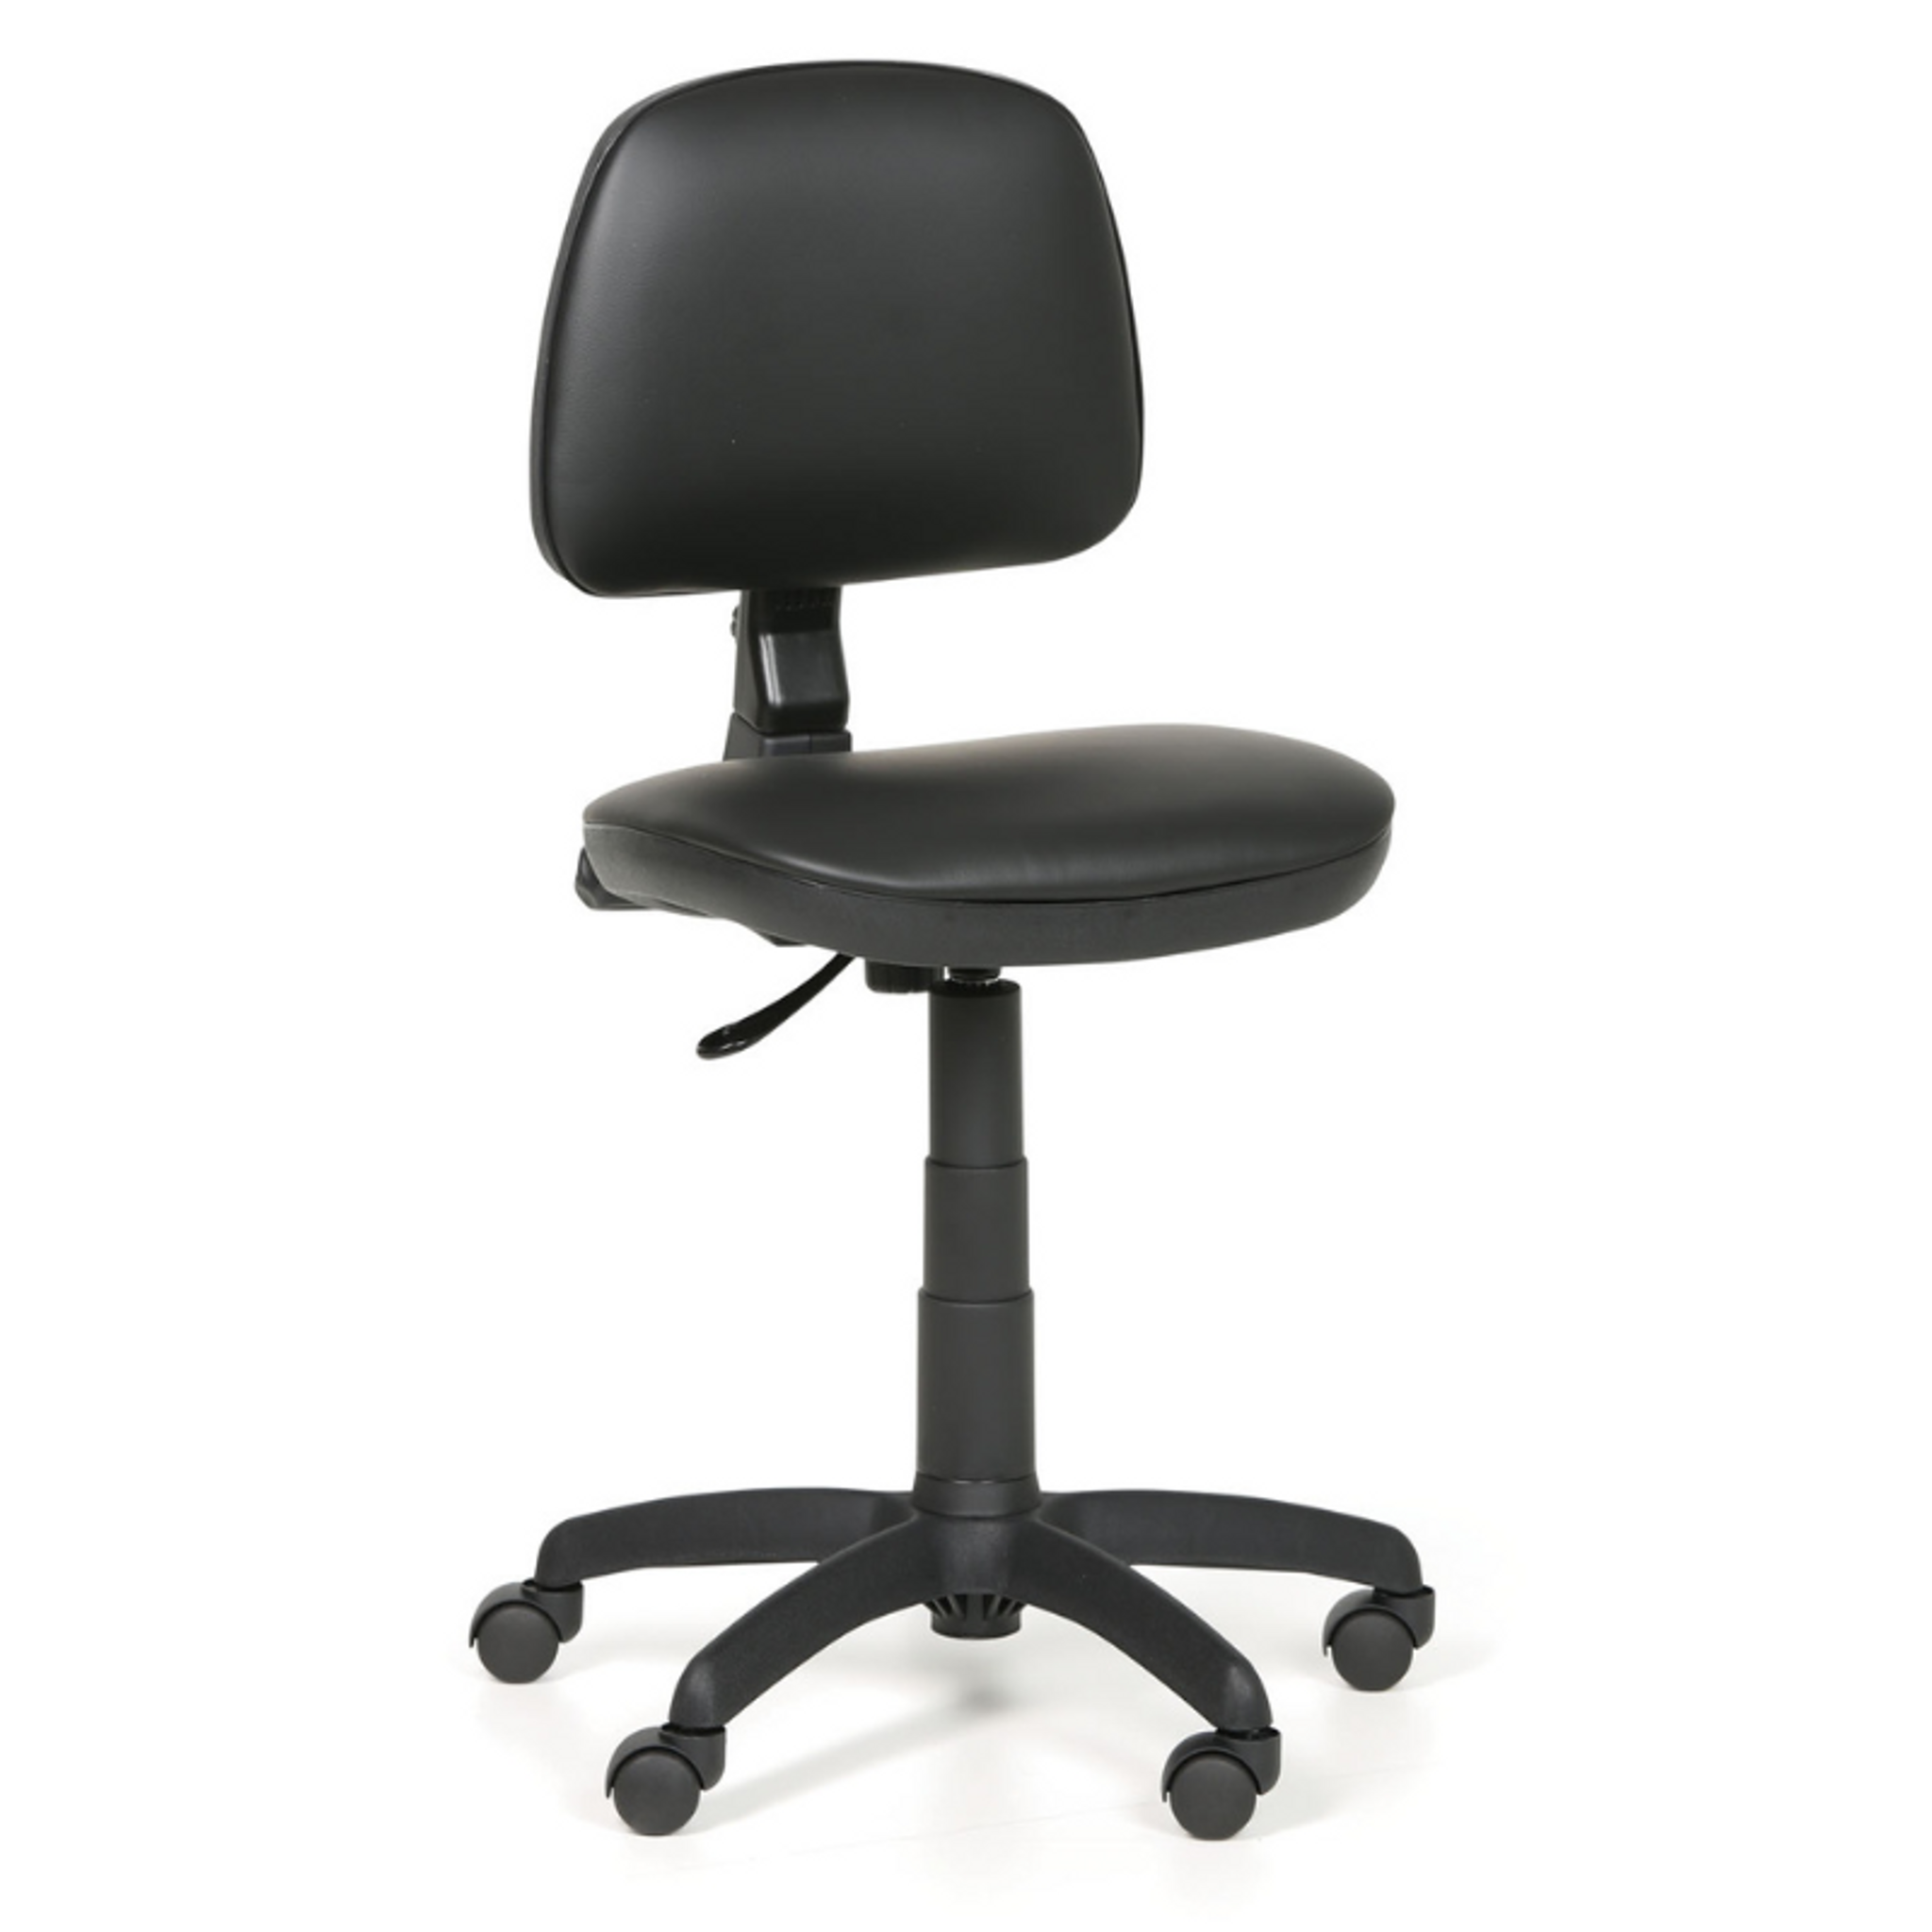 Pracovní židle na kolečkách MILANO bez područek, permanentní kontakt, pro měkké podlahy